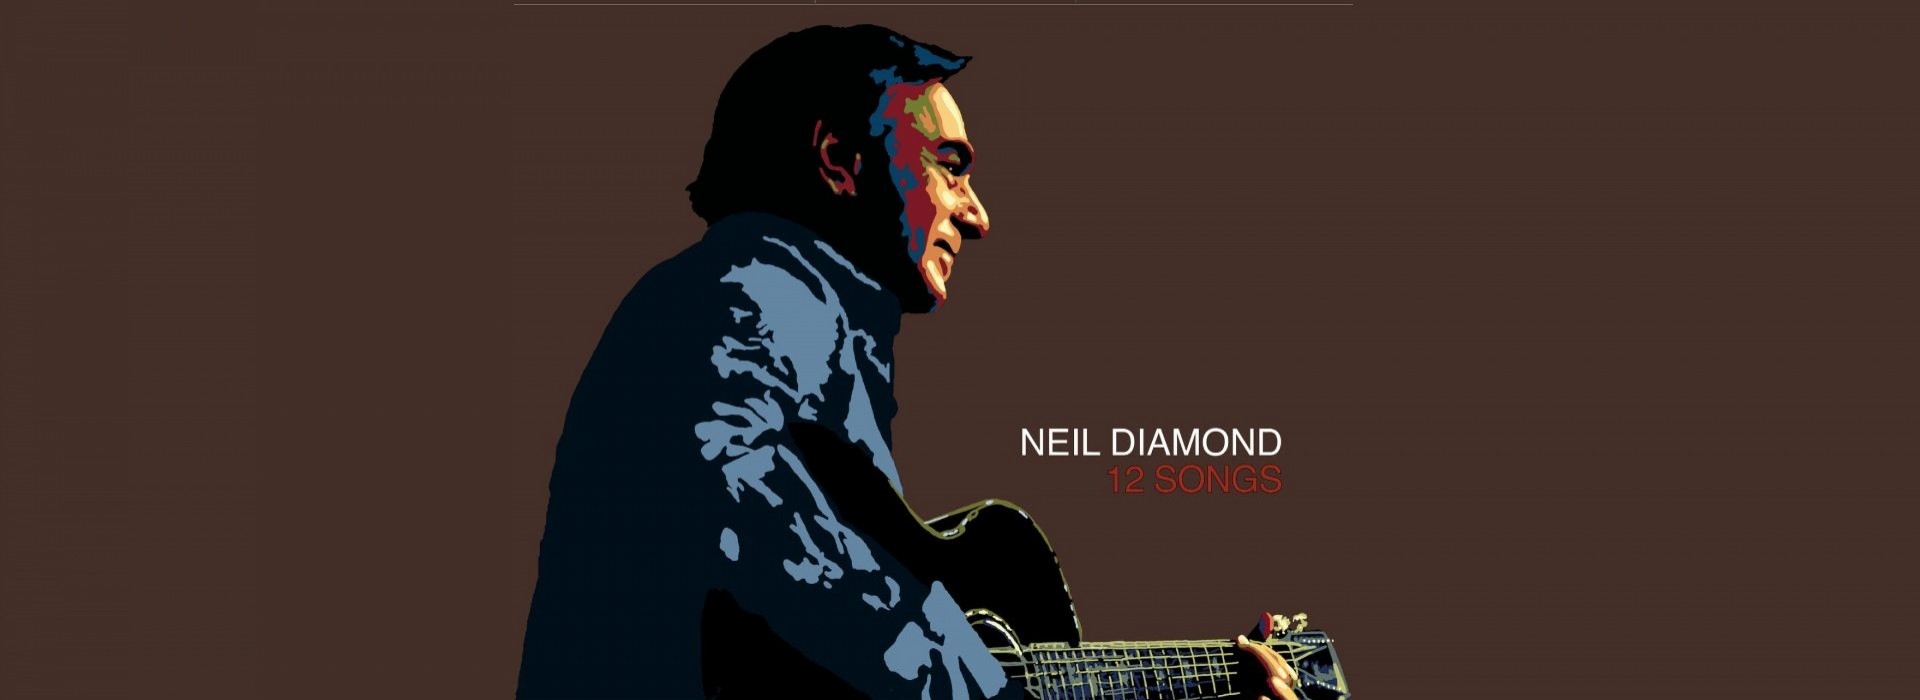 Historia jednej płyty: „12 Songs” Neila Diamonda